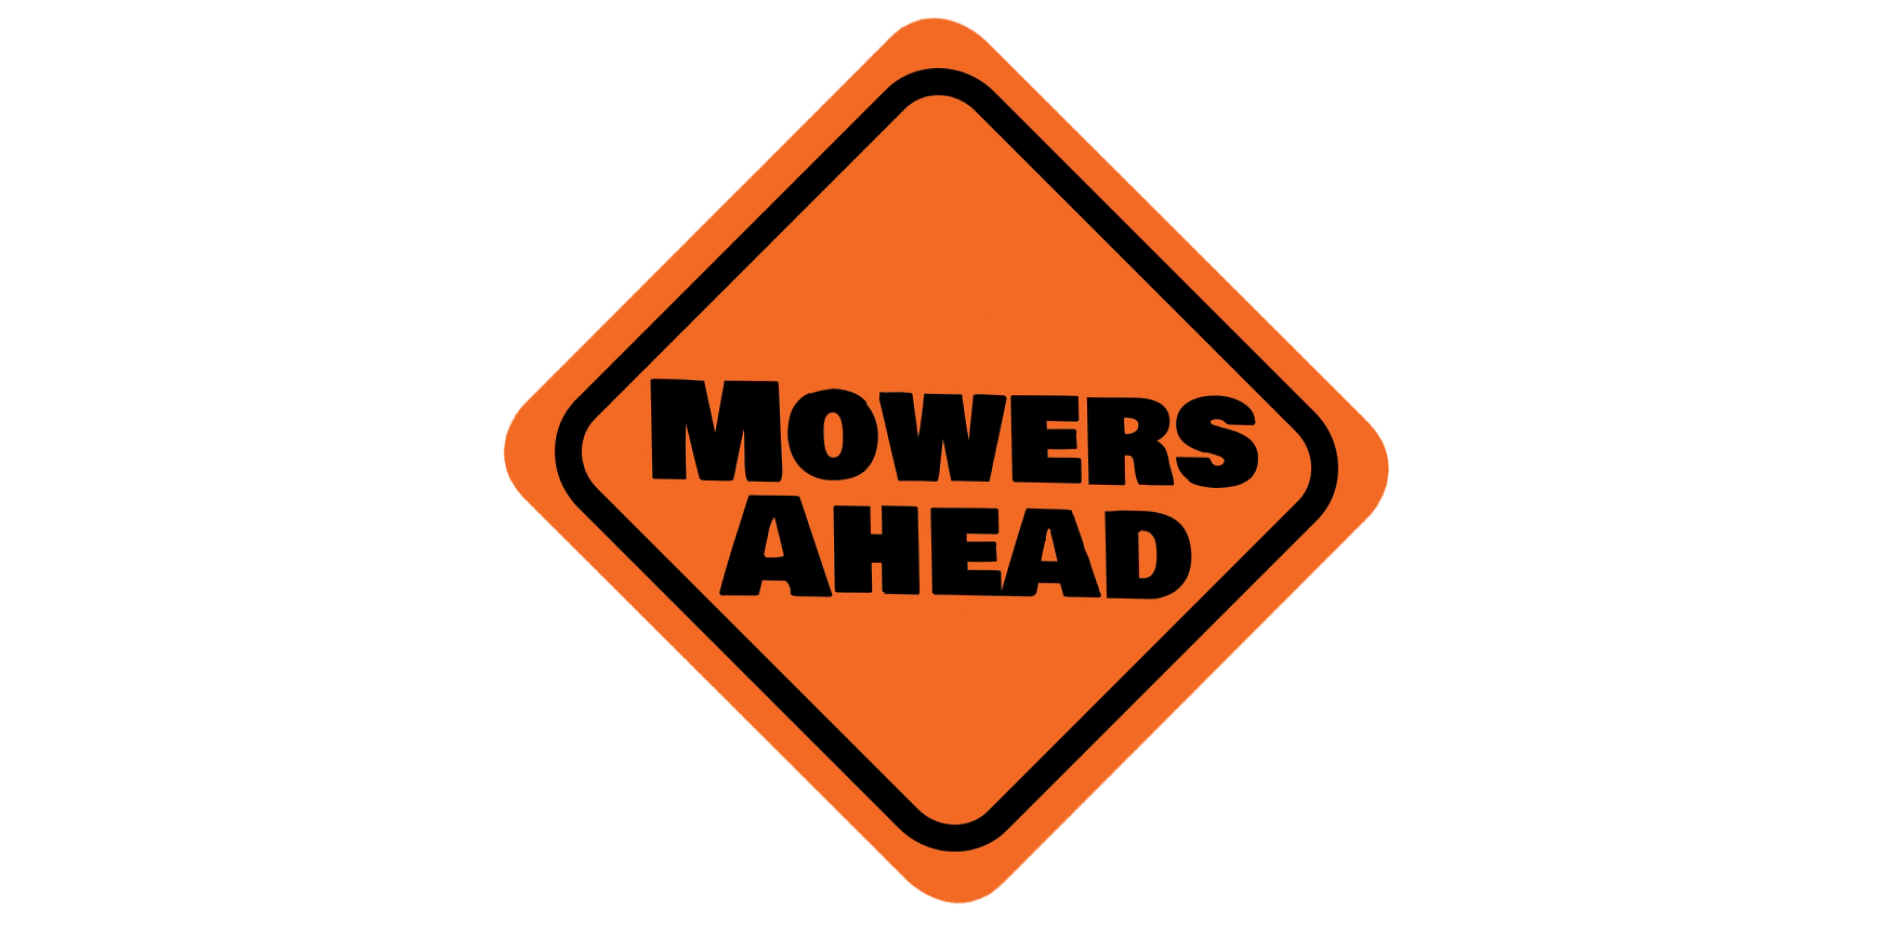 Mowers Ahead logo widget